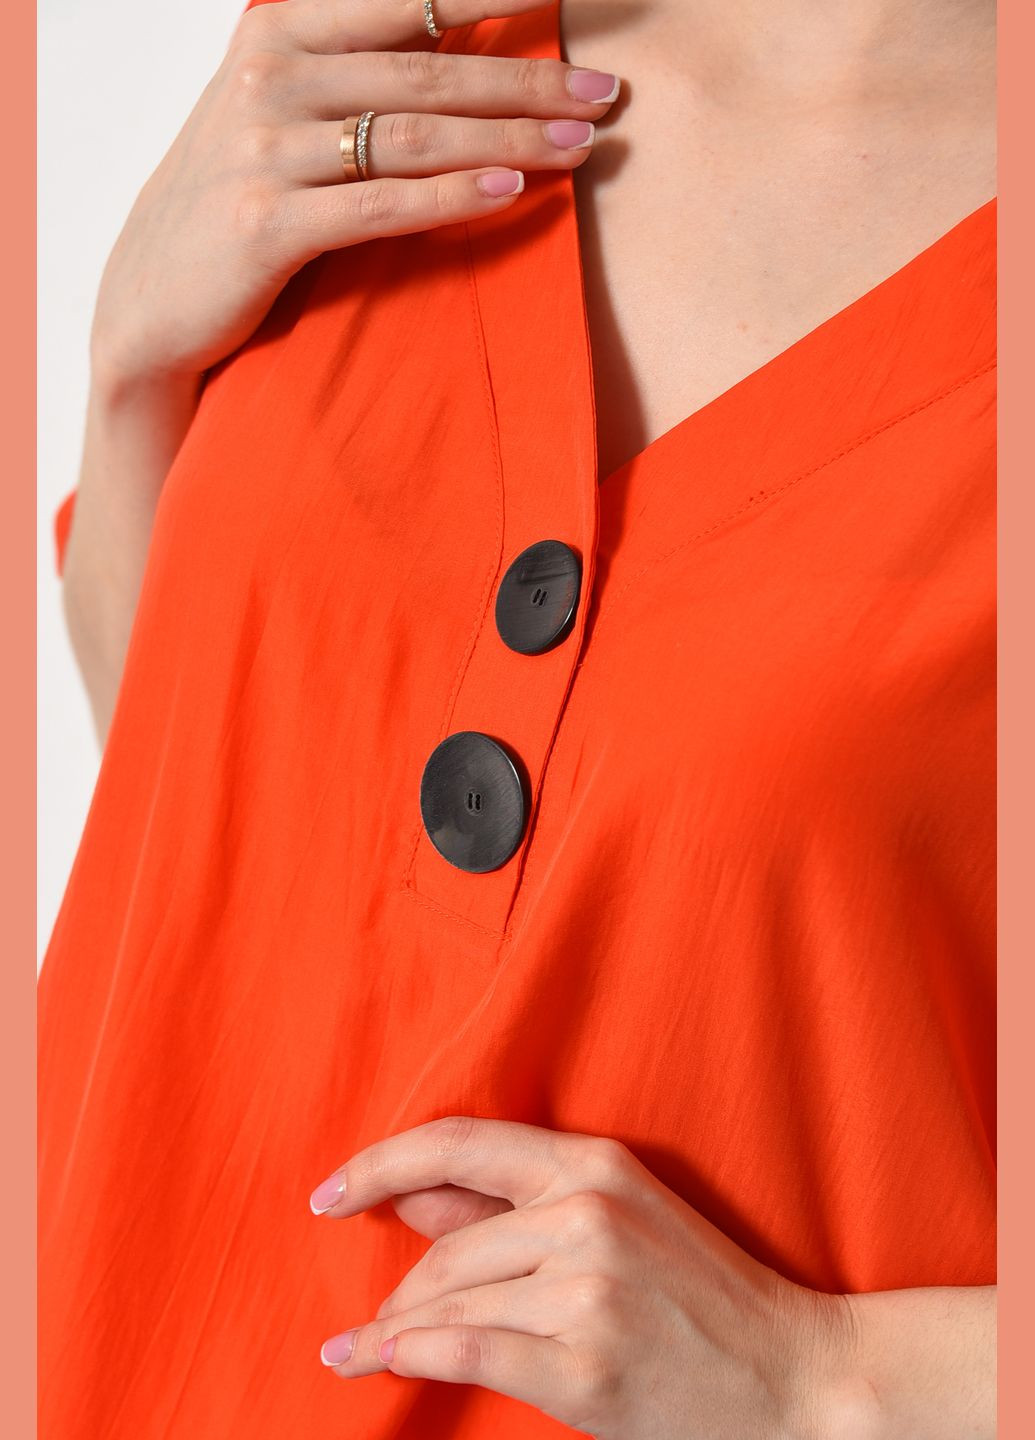 Оранжевая демисезонная блуза женская с коротким рукавом оранжевого цвета с баской Let's Shop